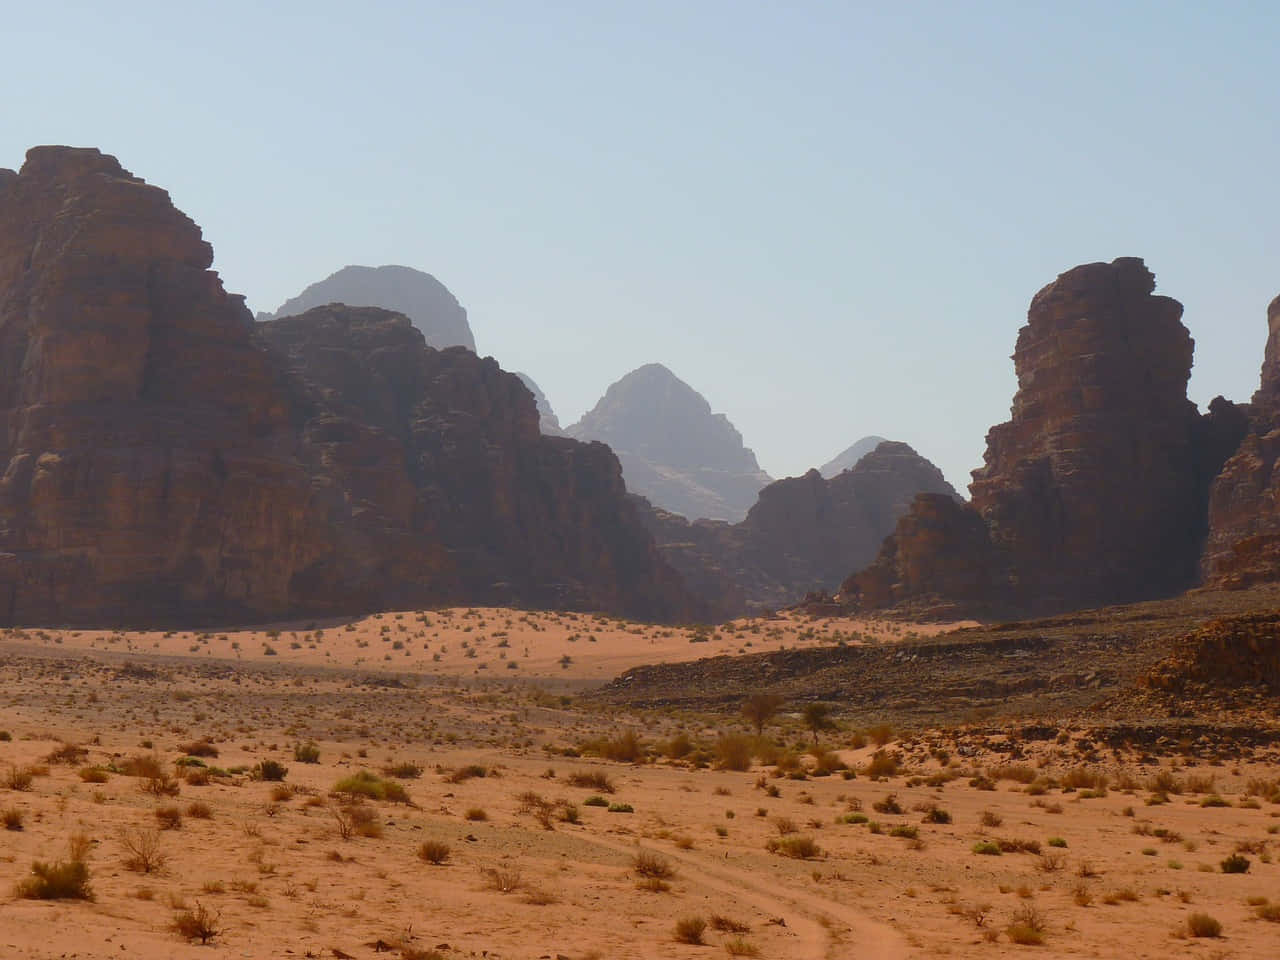 The Majestic Splendor of the Desert